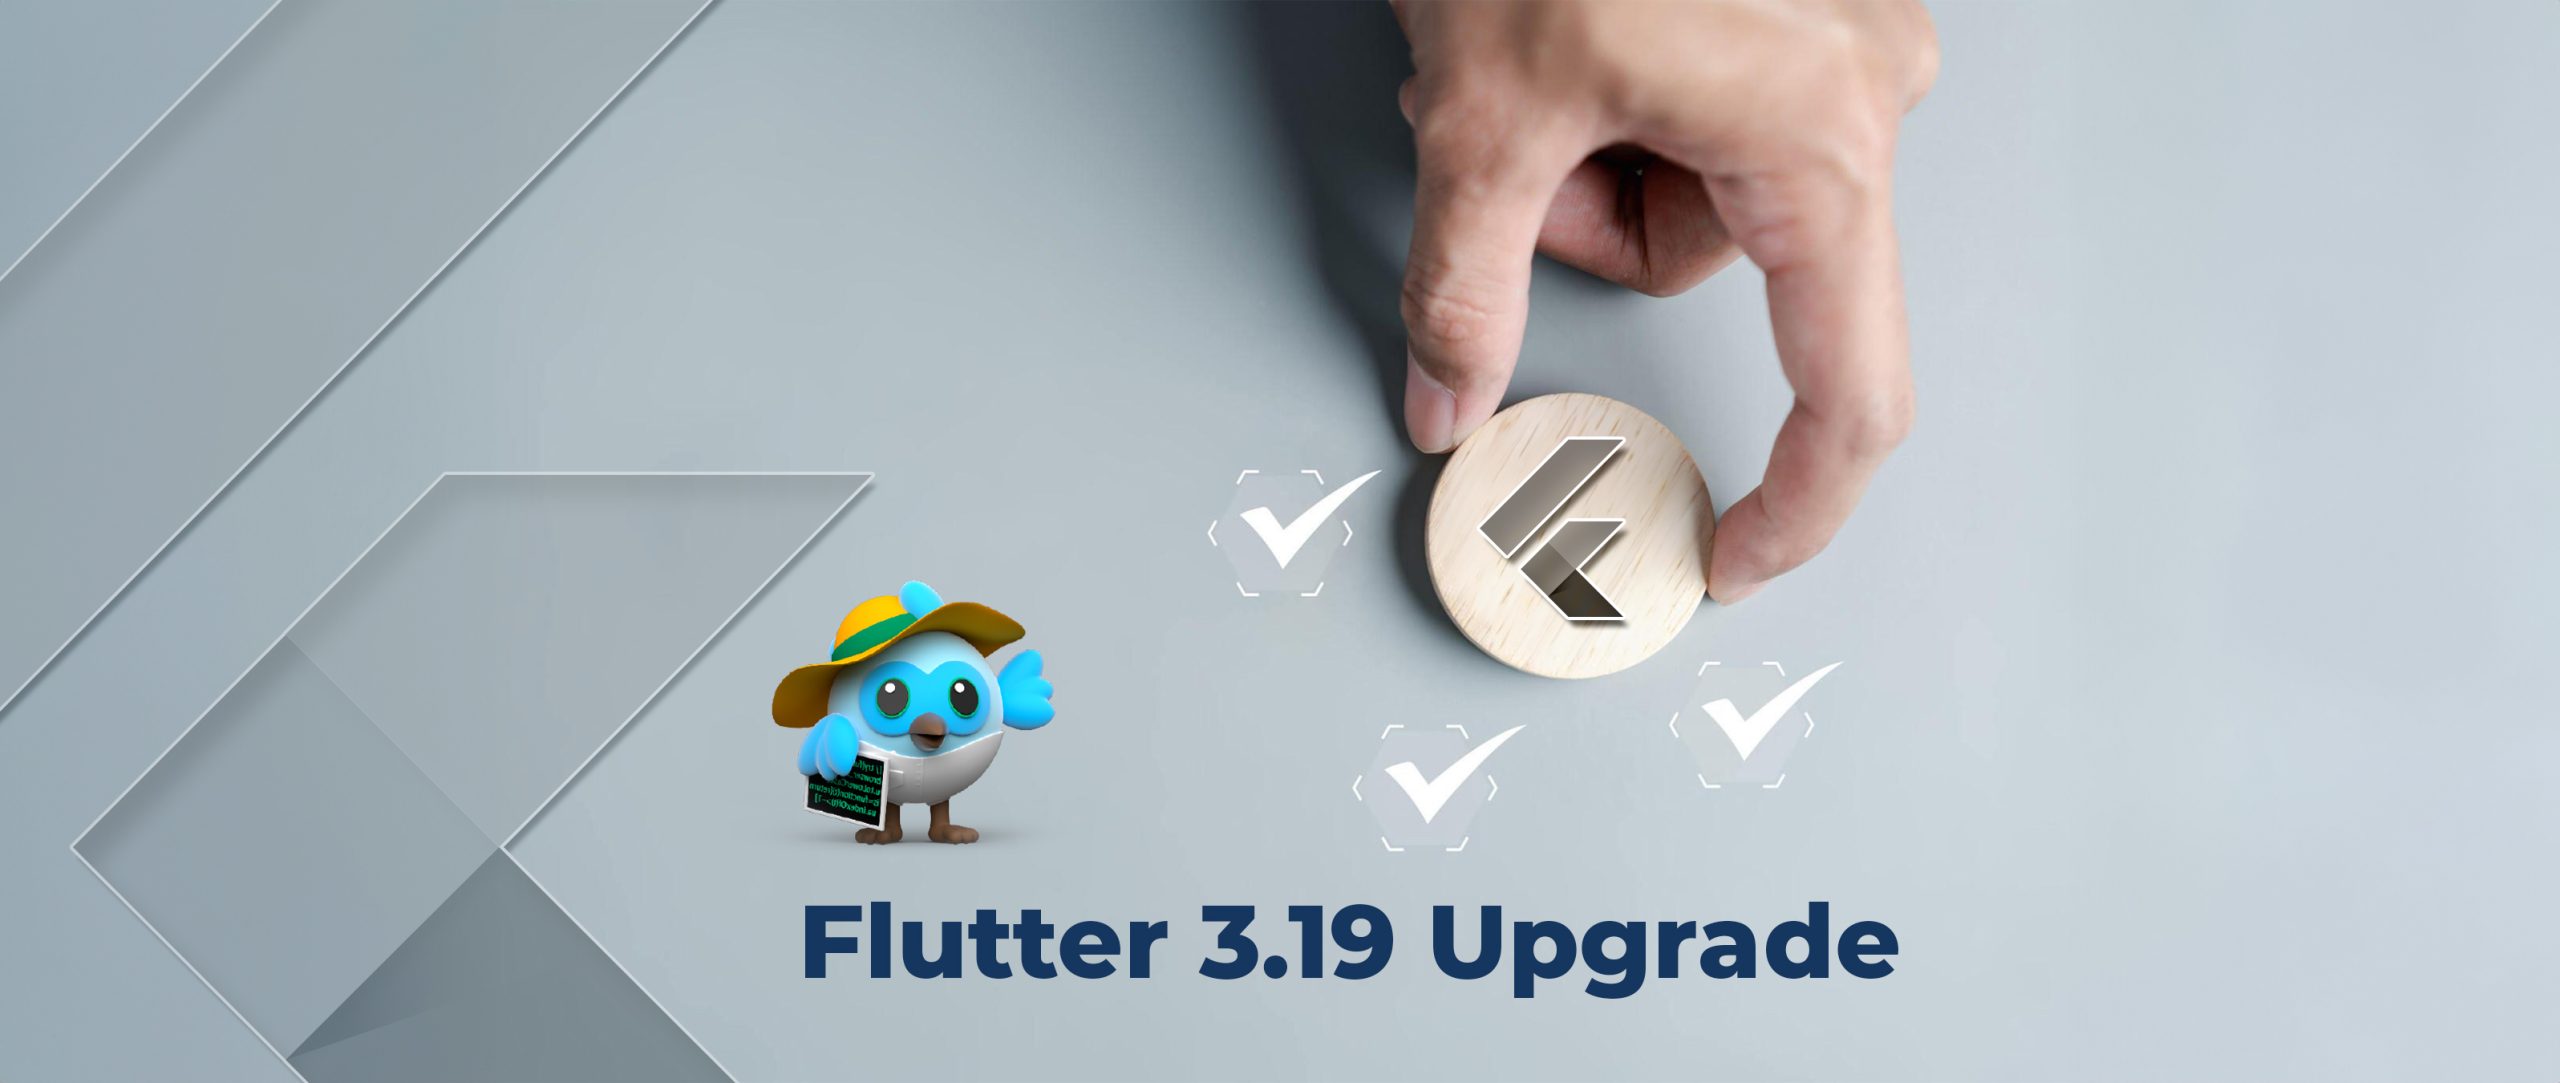 Flutter 3.19 brengt verschillende prestatieverbeteringen en nieuwe functies